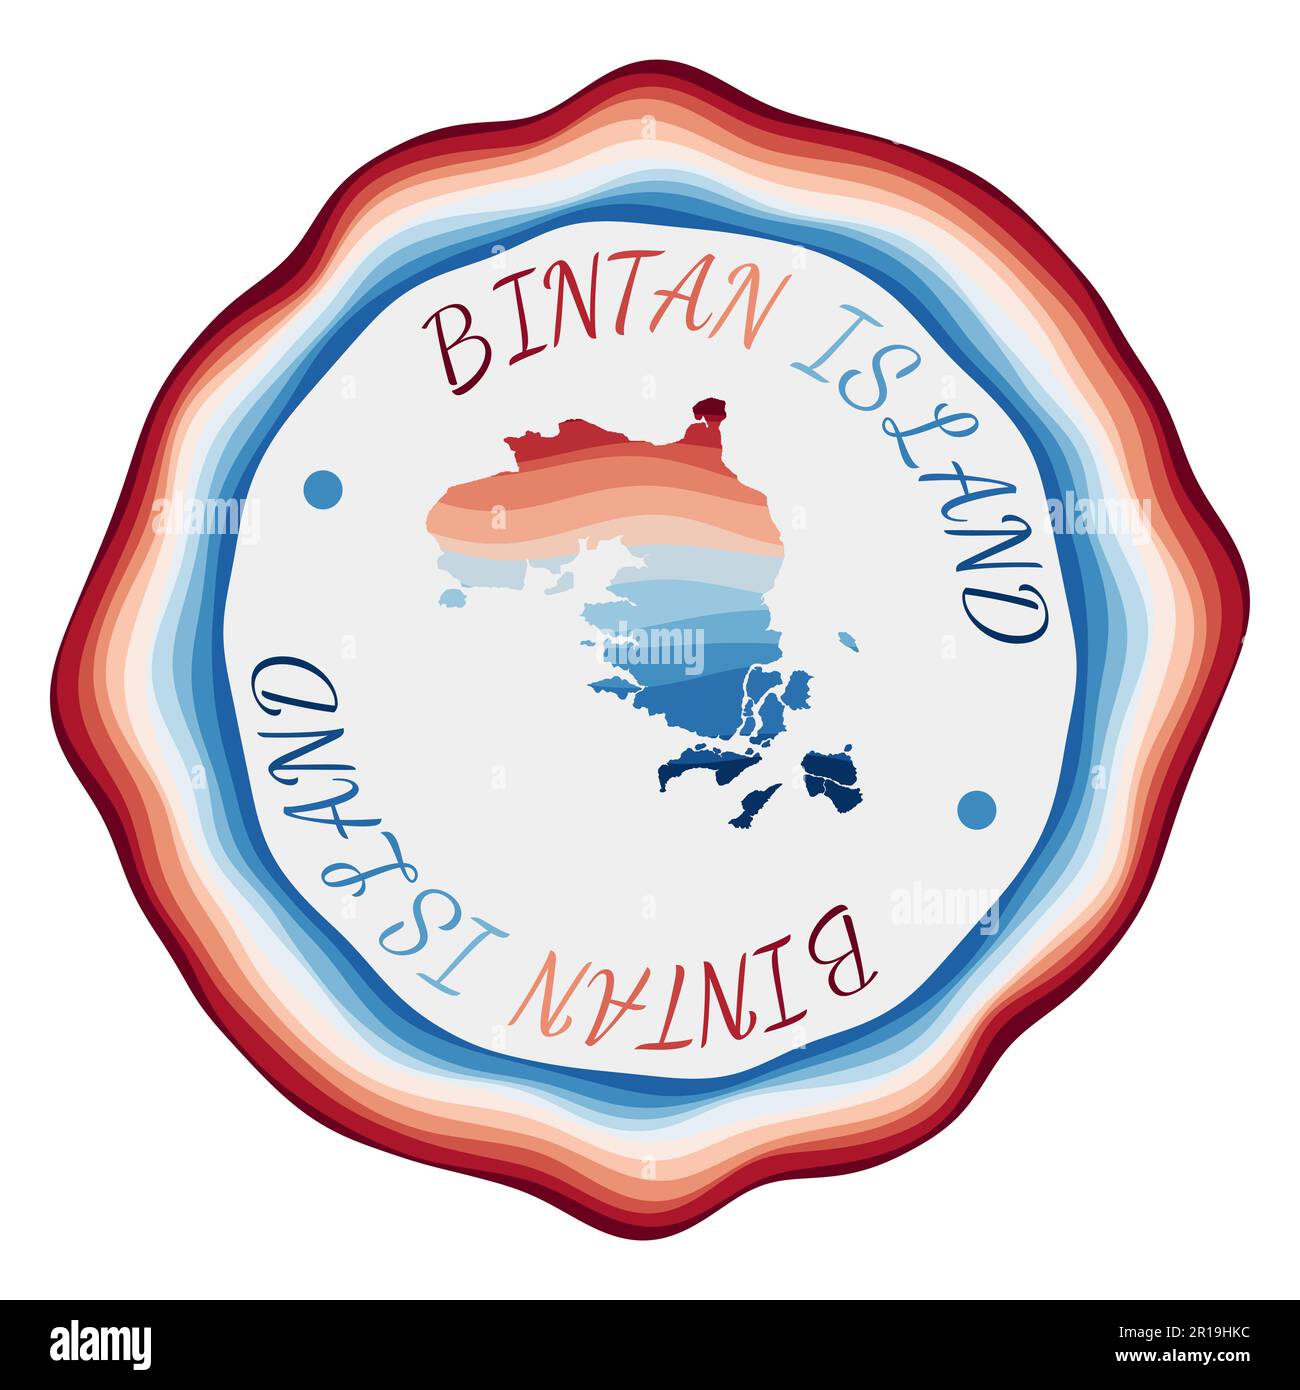 Bintan Island Abzeichen. Karte der Insel mit wunderschönen geometrischen Wellen und leuchtend rotem blauem Rahmen. Leuchtendes rundes Bintan-Logo. Vektordarstellung. Stock Vektor